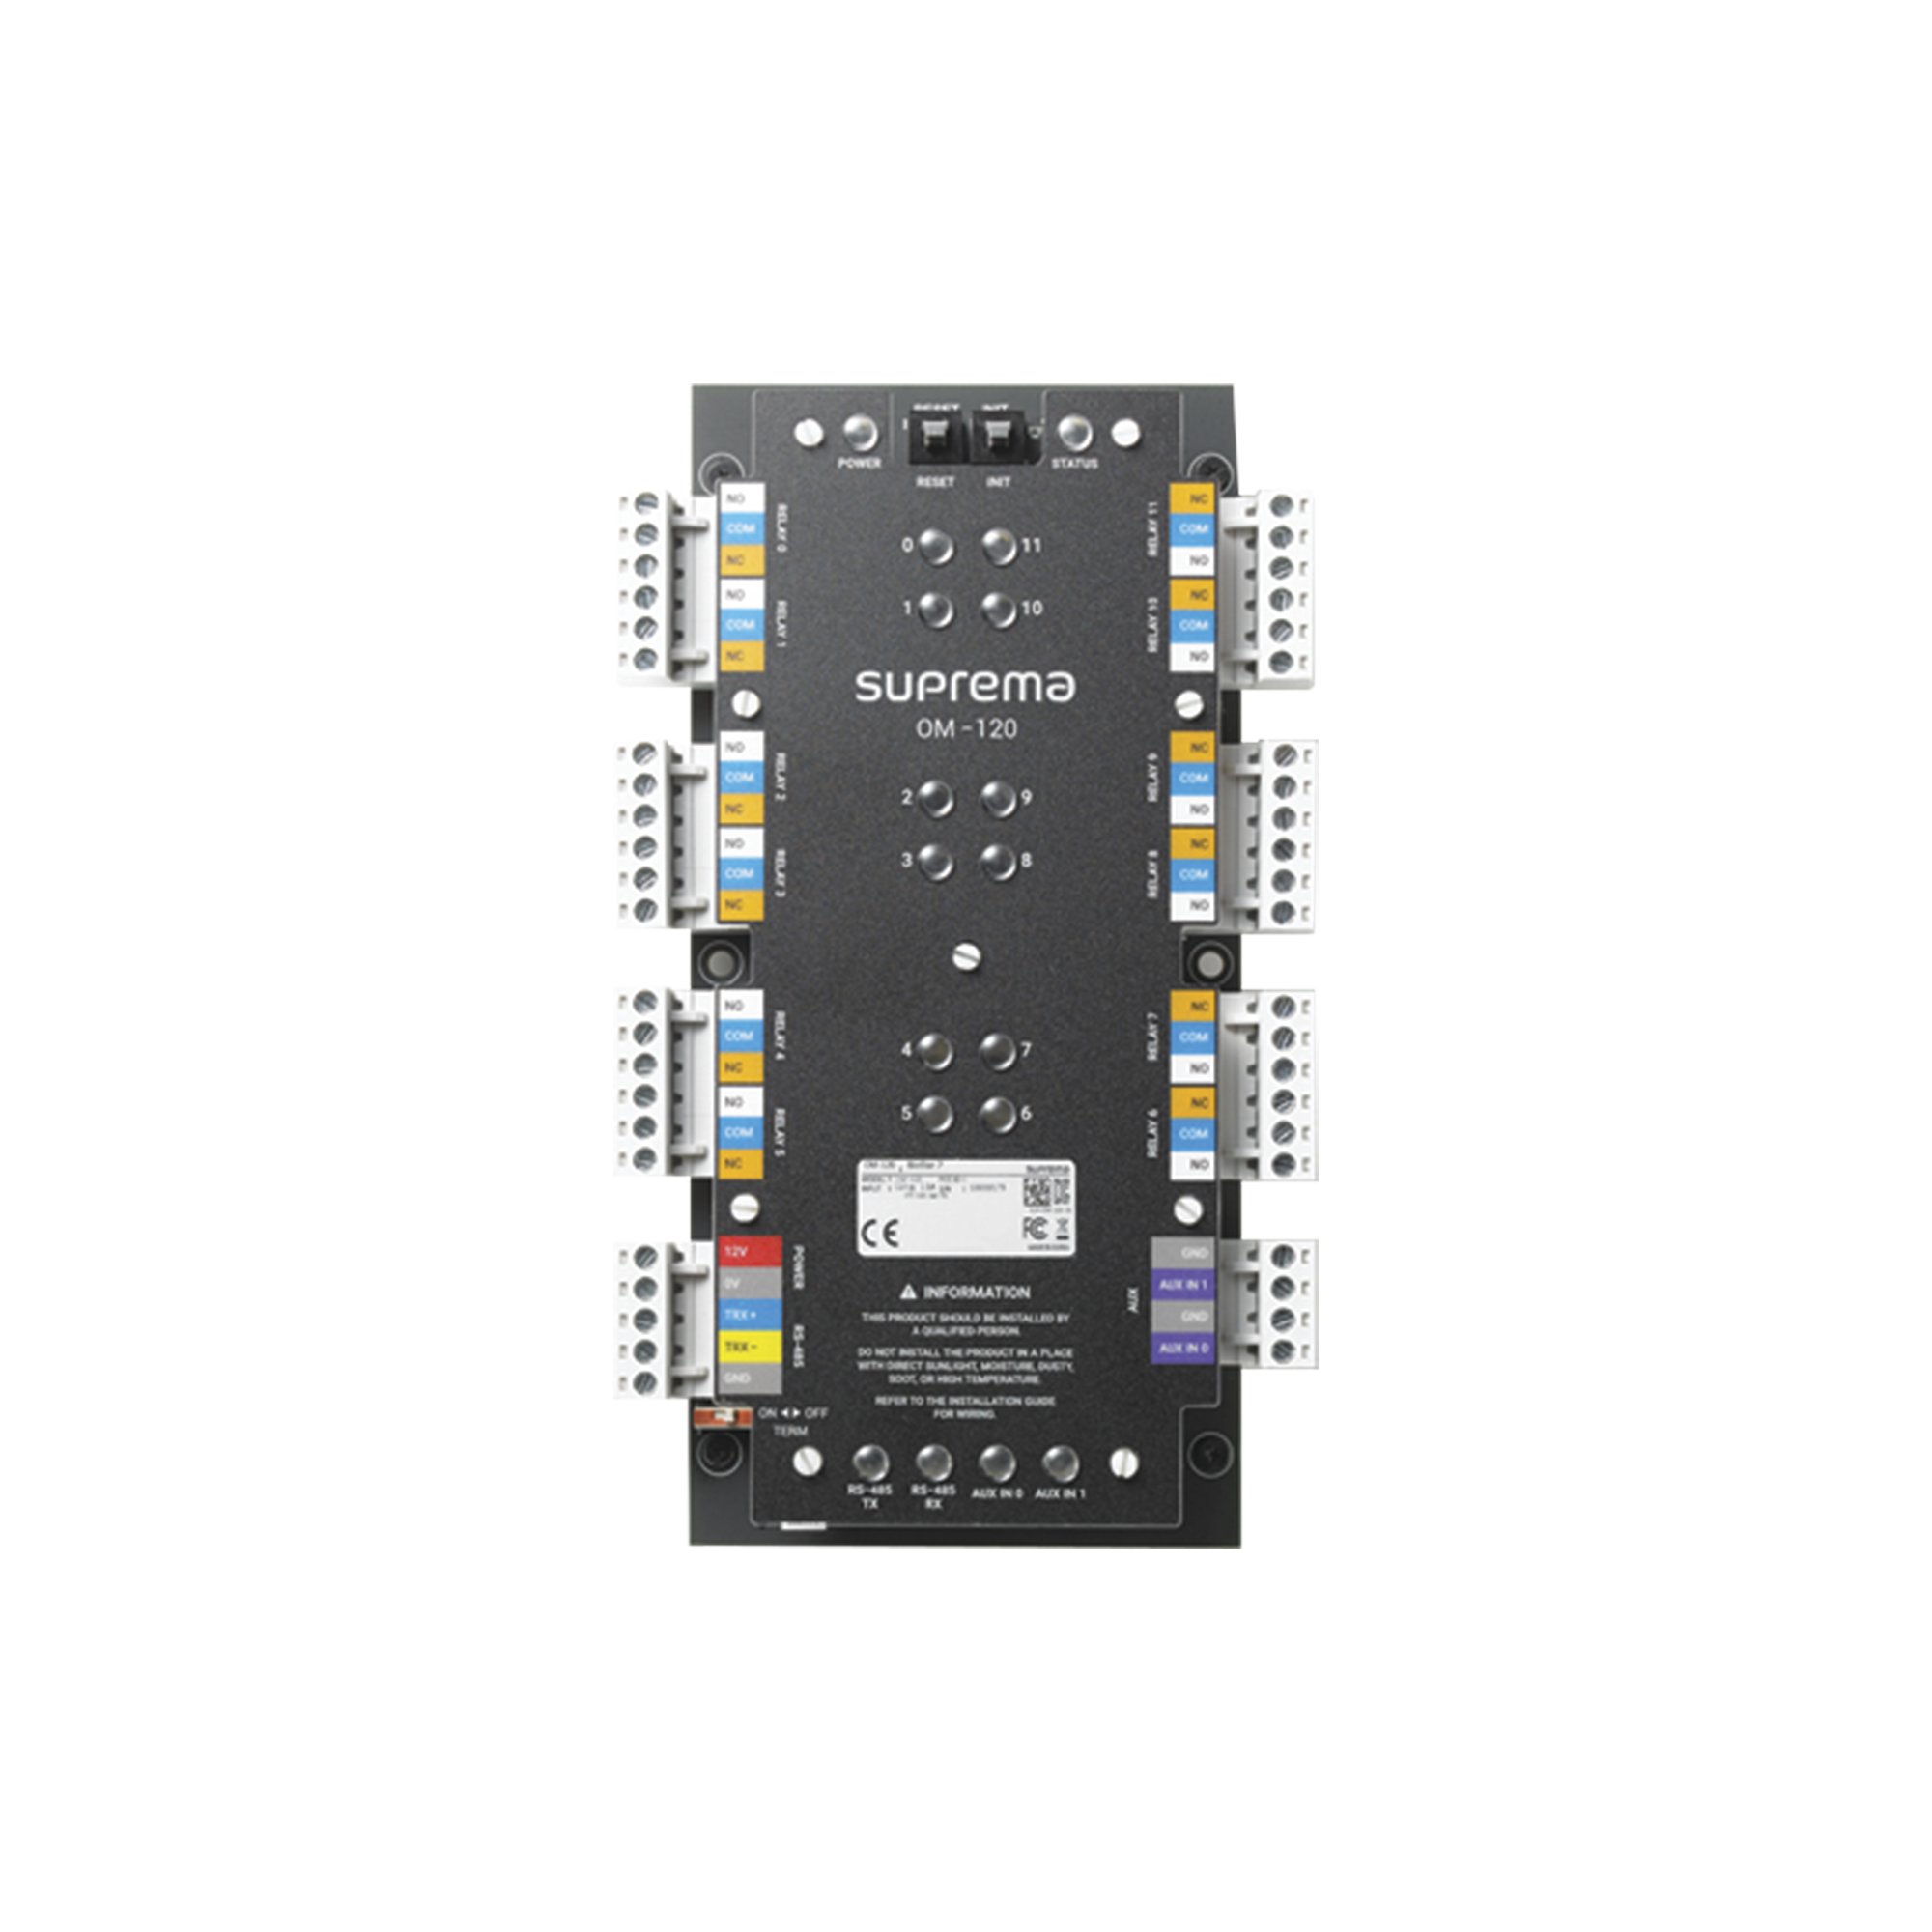 Módulo de Control / 12 Relevadores de Salida con Función para Control de Elevadores